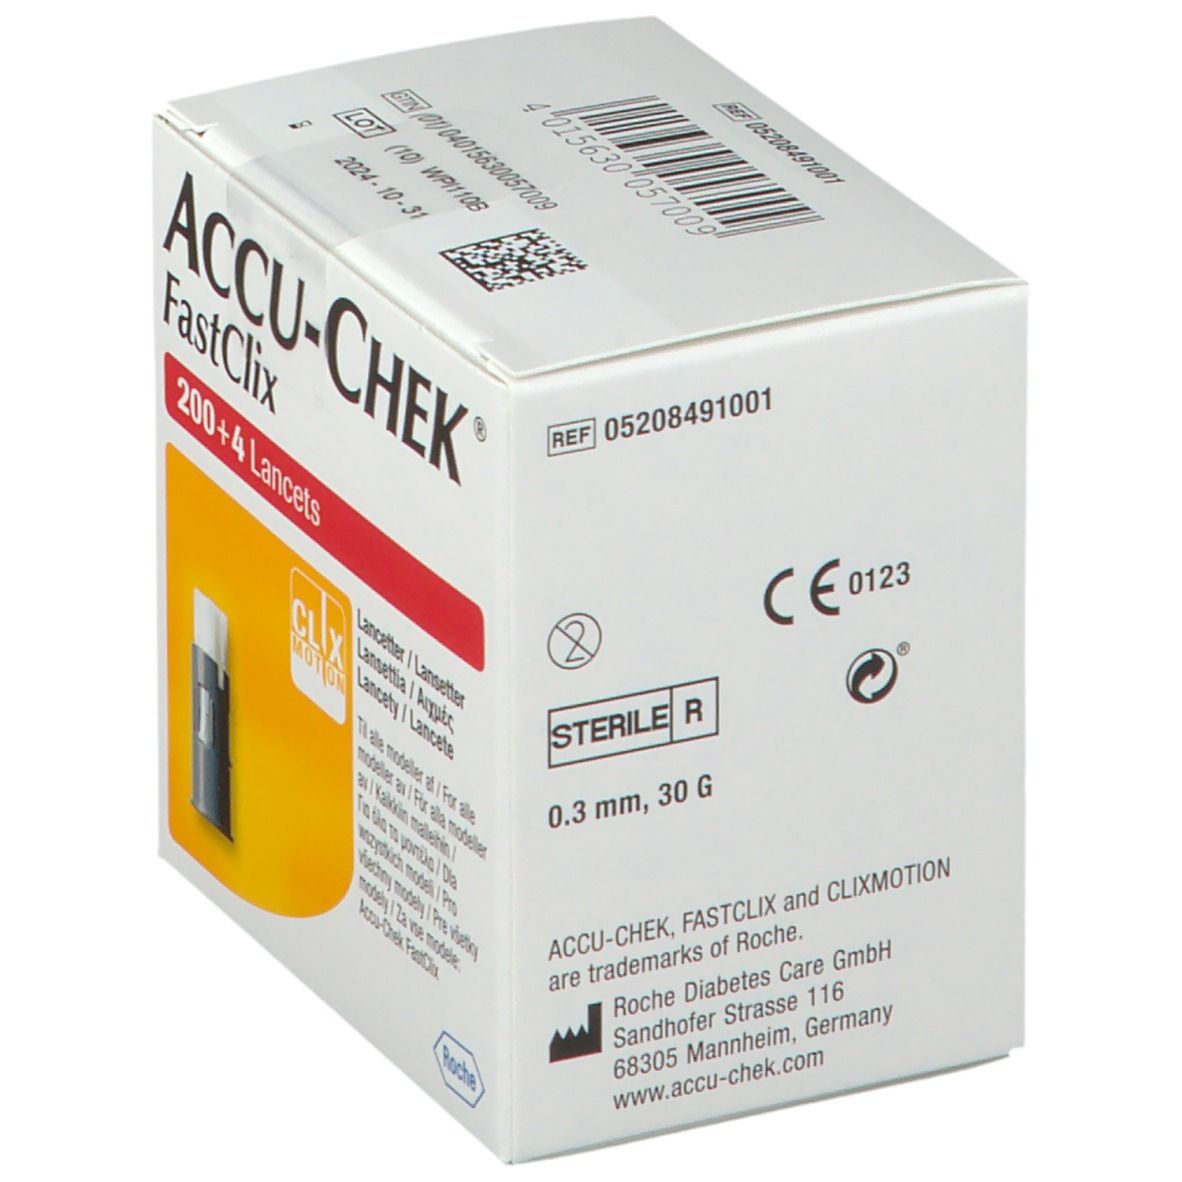 ACCU-CHEK® Fastclix Lancettes